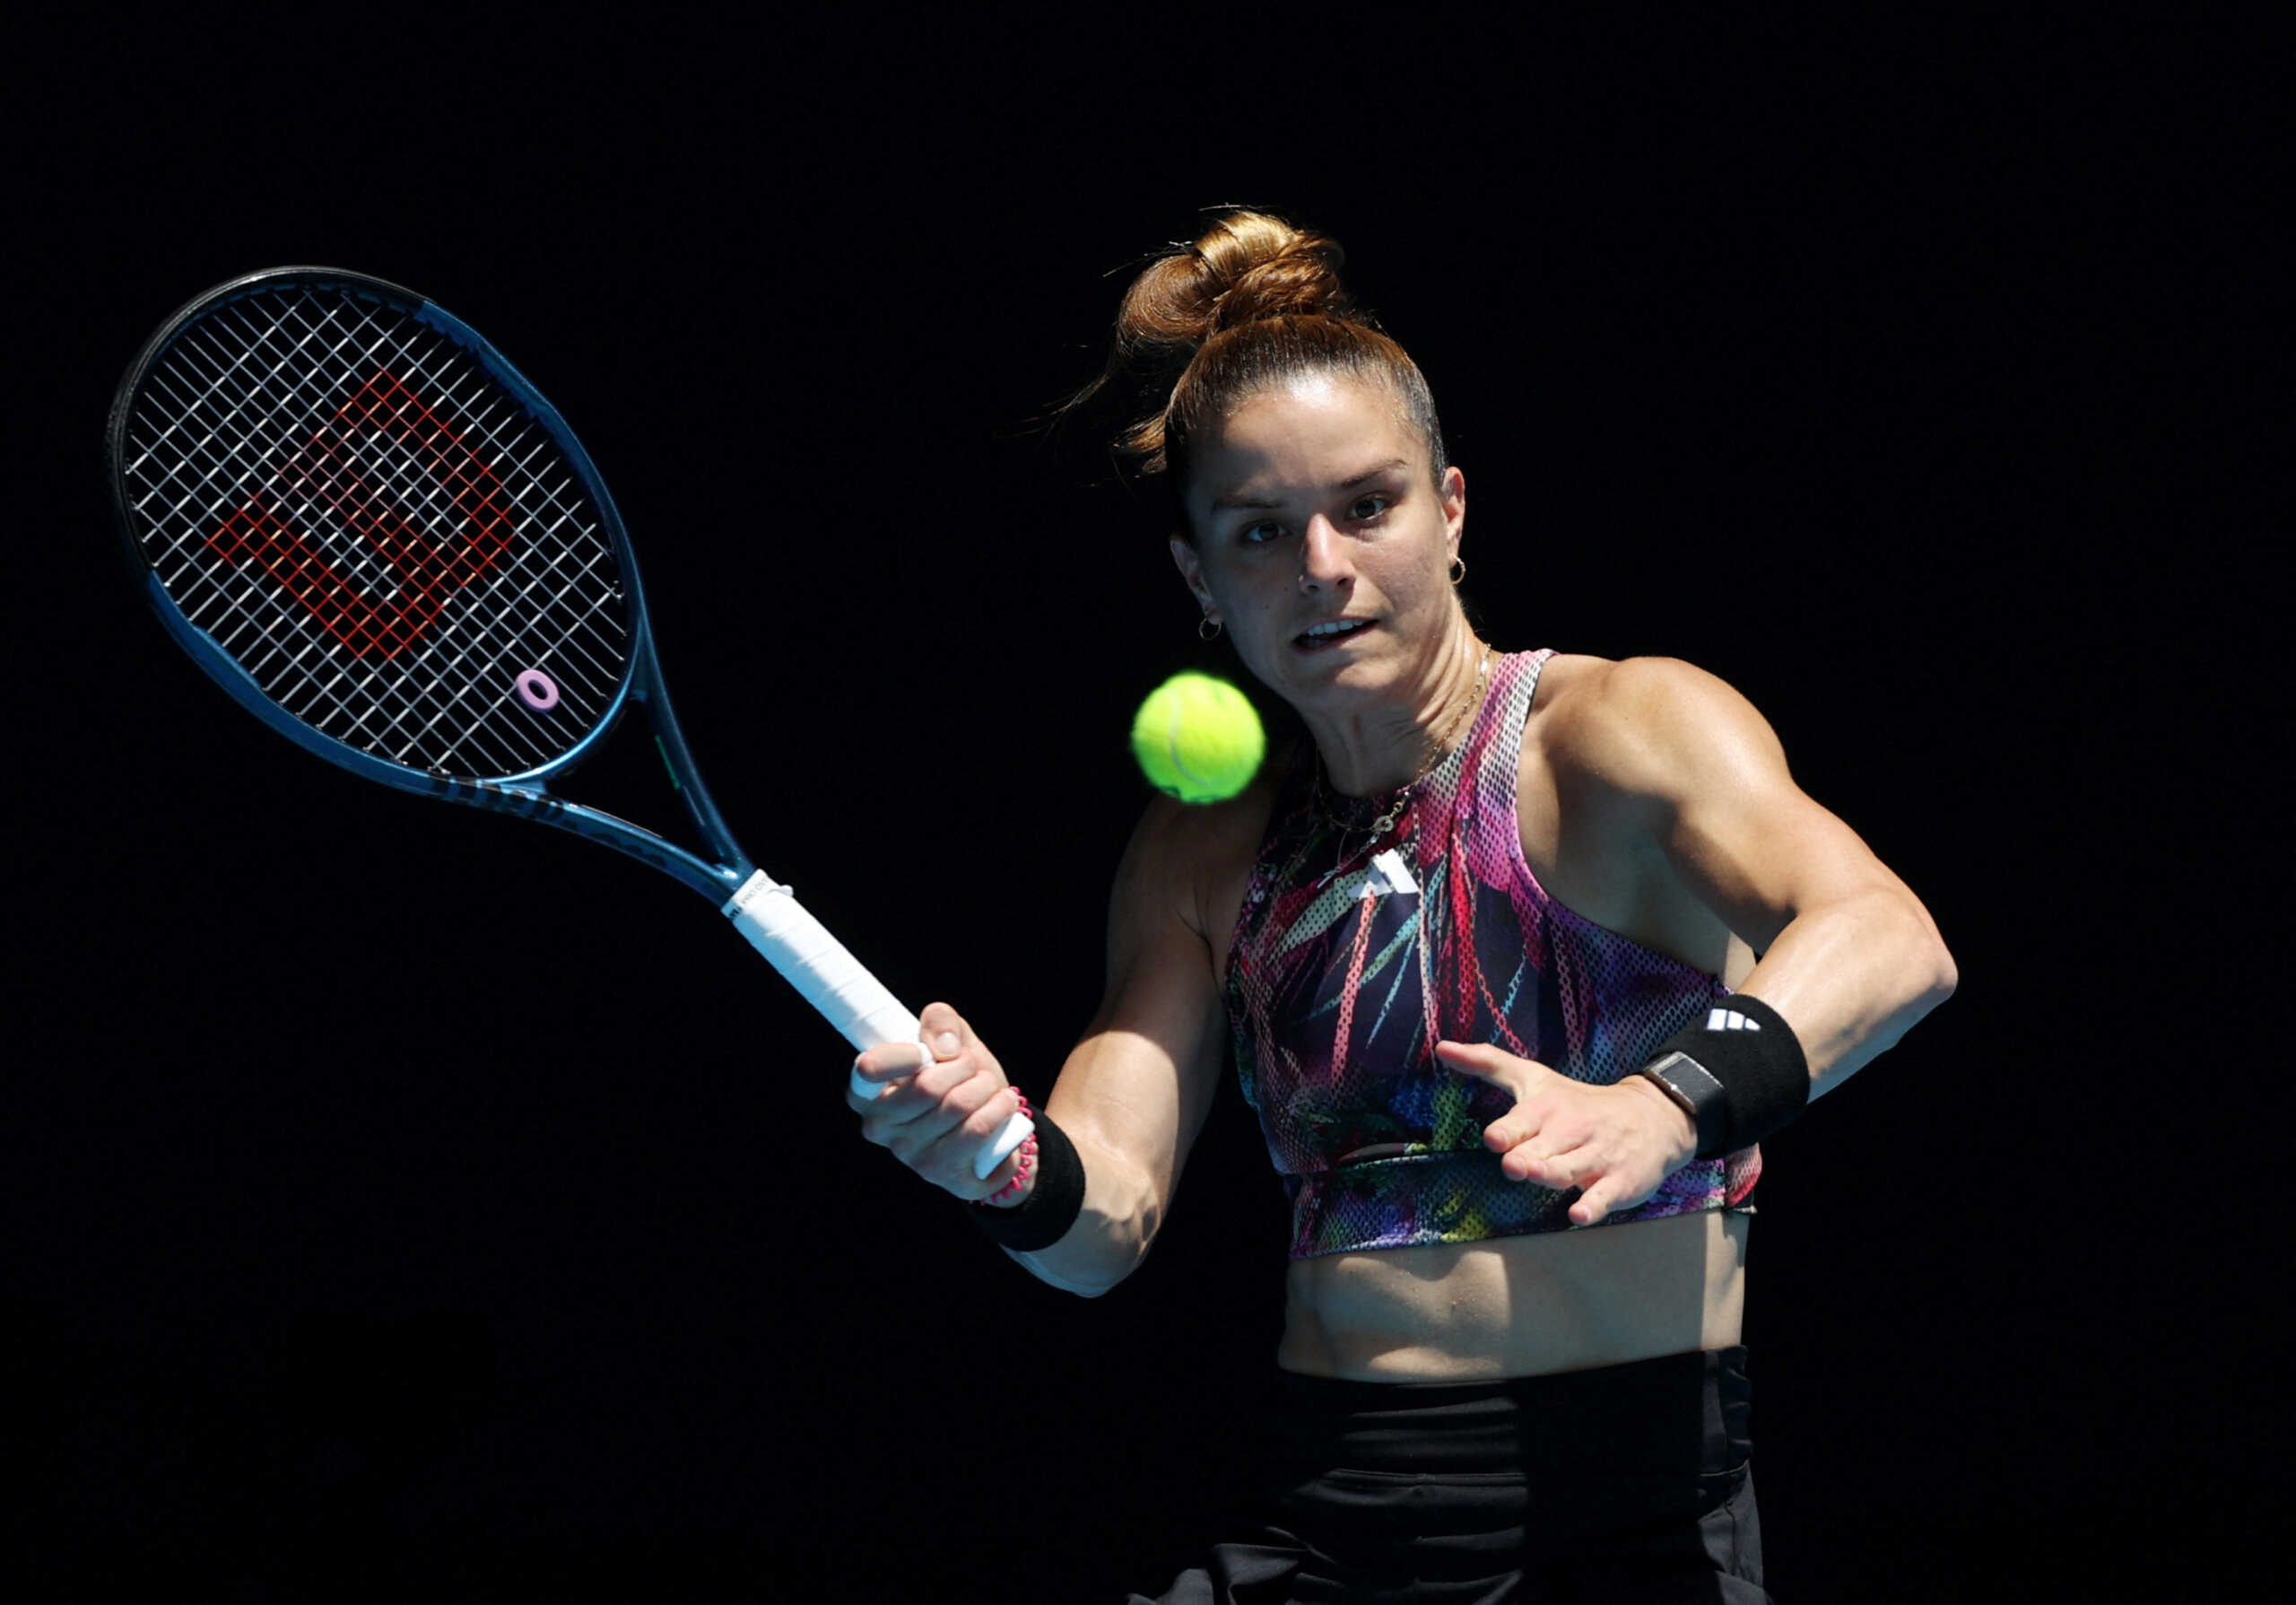 Η ανάρτηση της Μαρίας Σάκκαρη μετά την πρεμιέρα της στο Australian Open